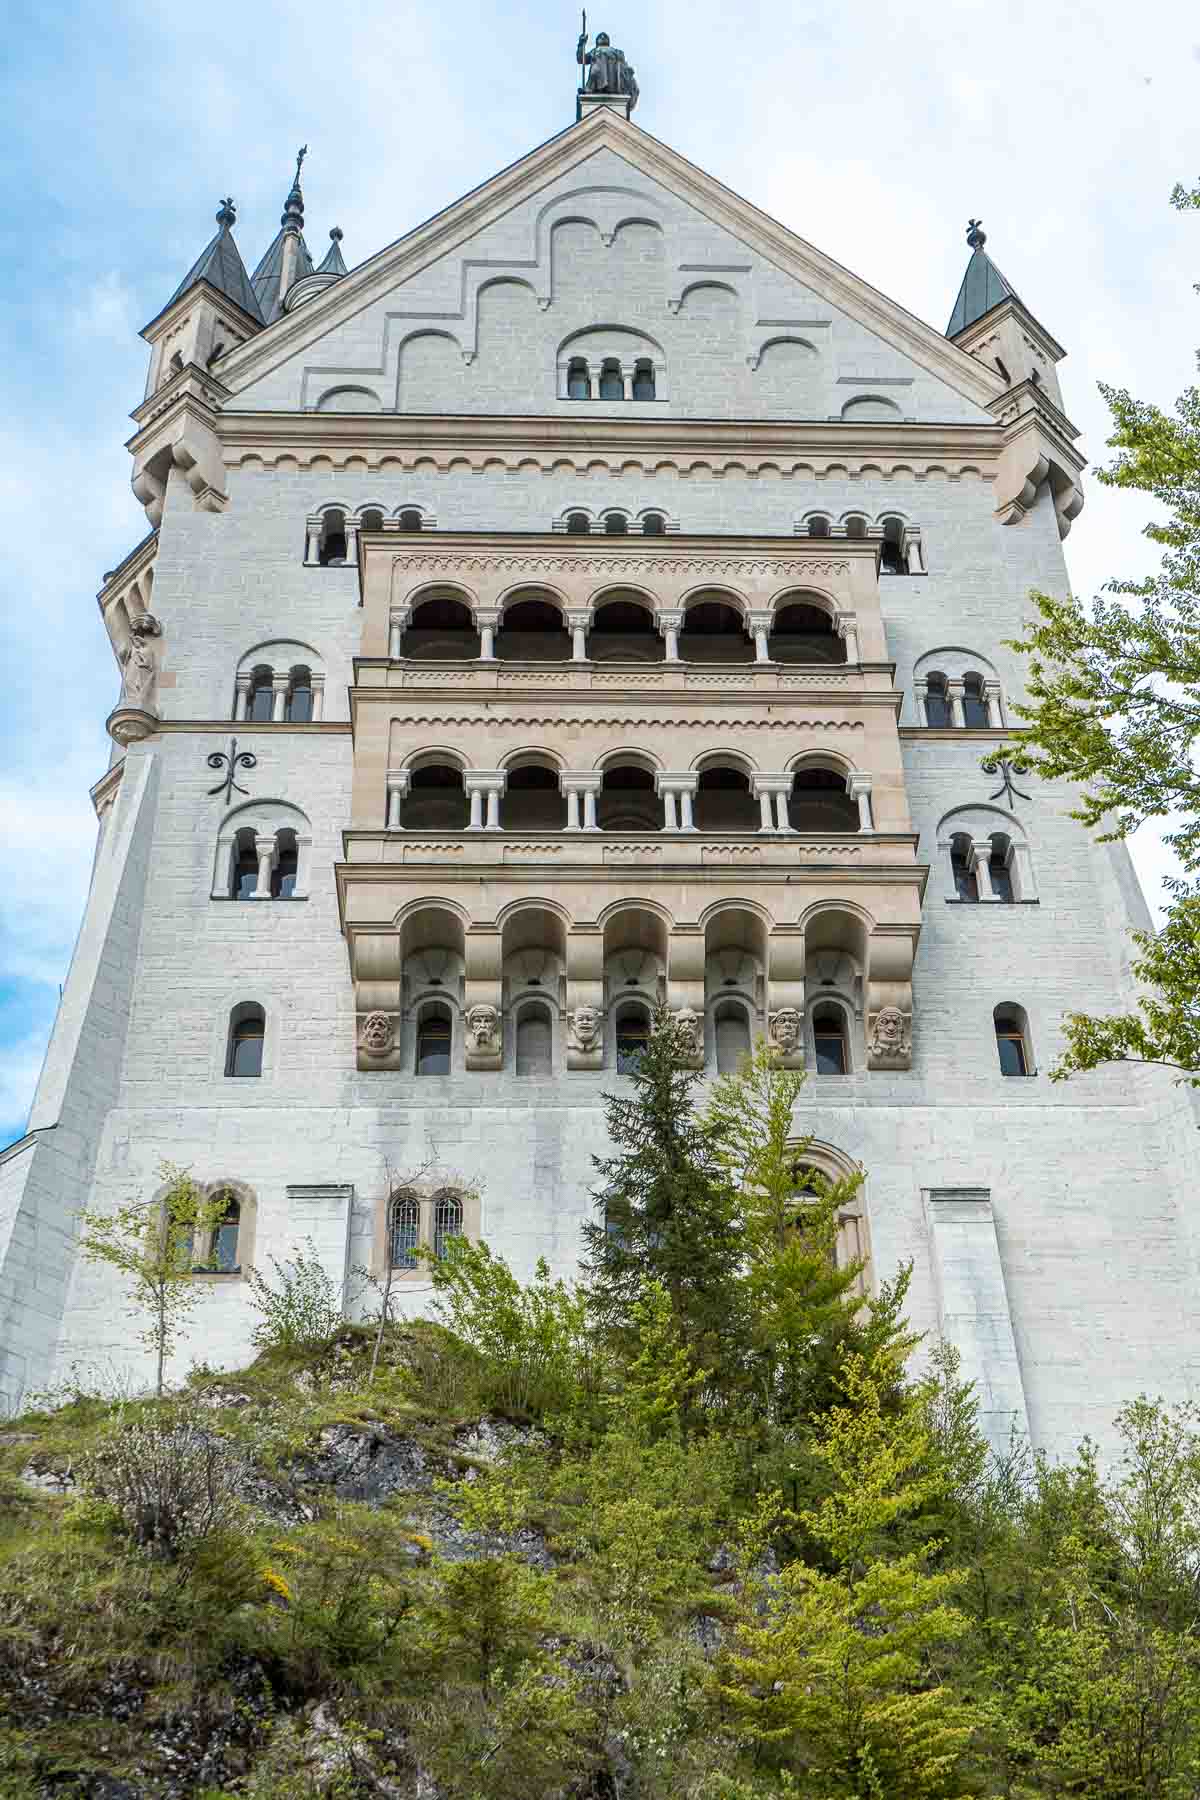 Neuschwanstein Castle in Bavaria, Germany